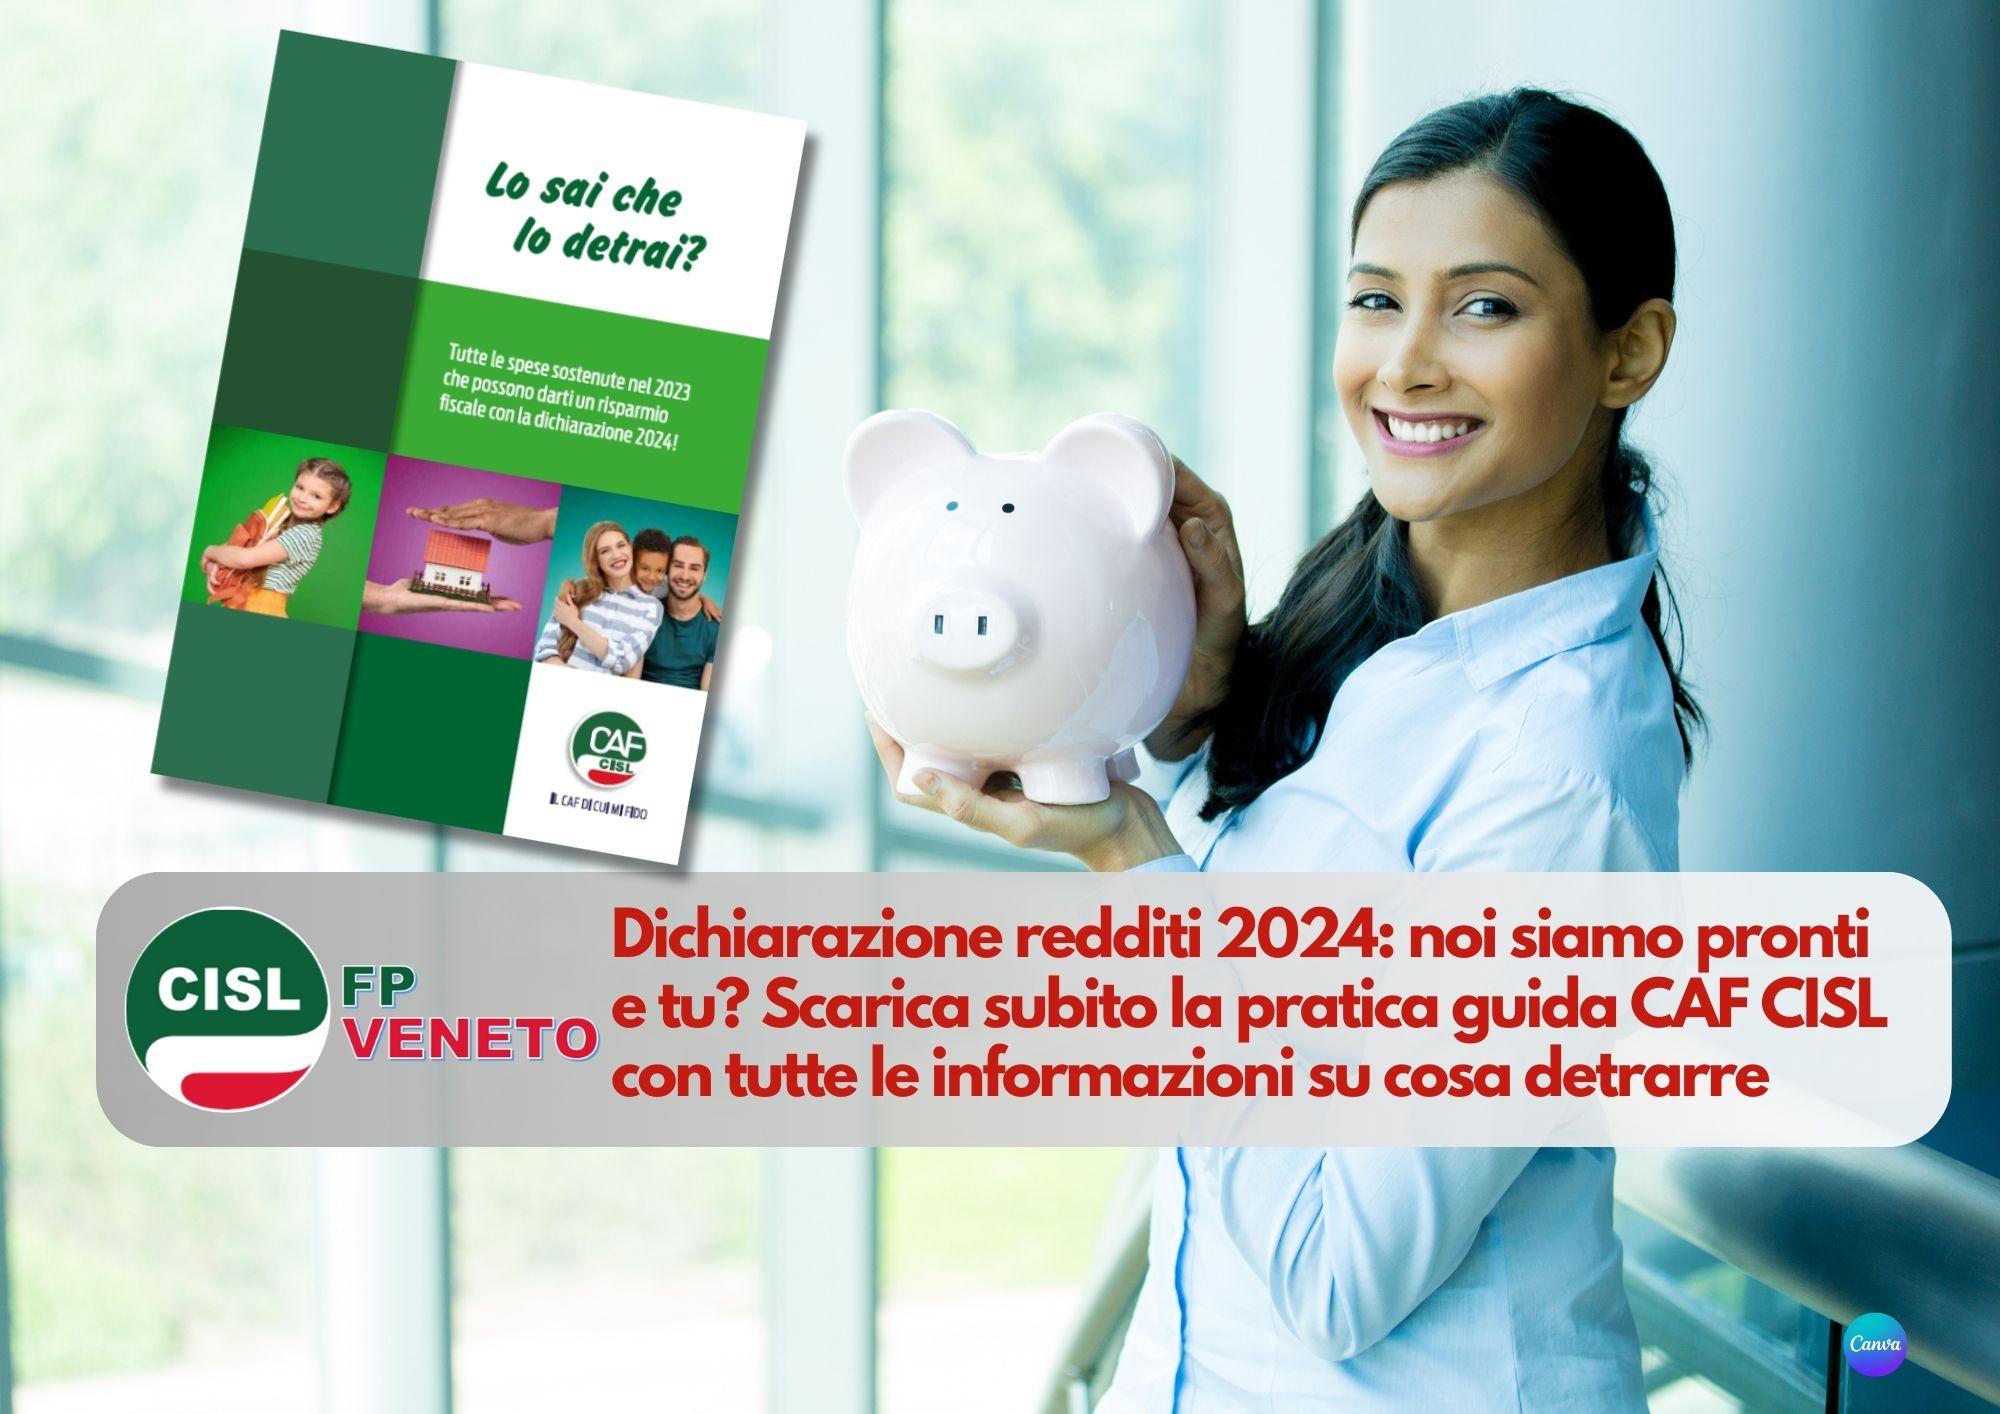 CISL FP Veneto. Dichiarazione redditi 2024: noi siamo pronti e tu? Scarica la pratica guida CAF CISL